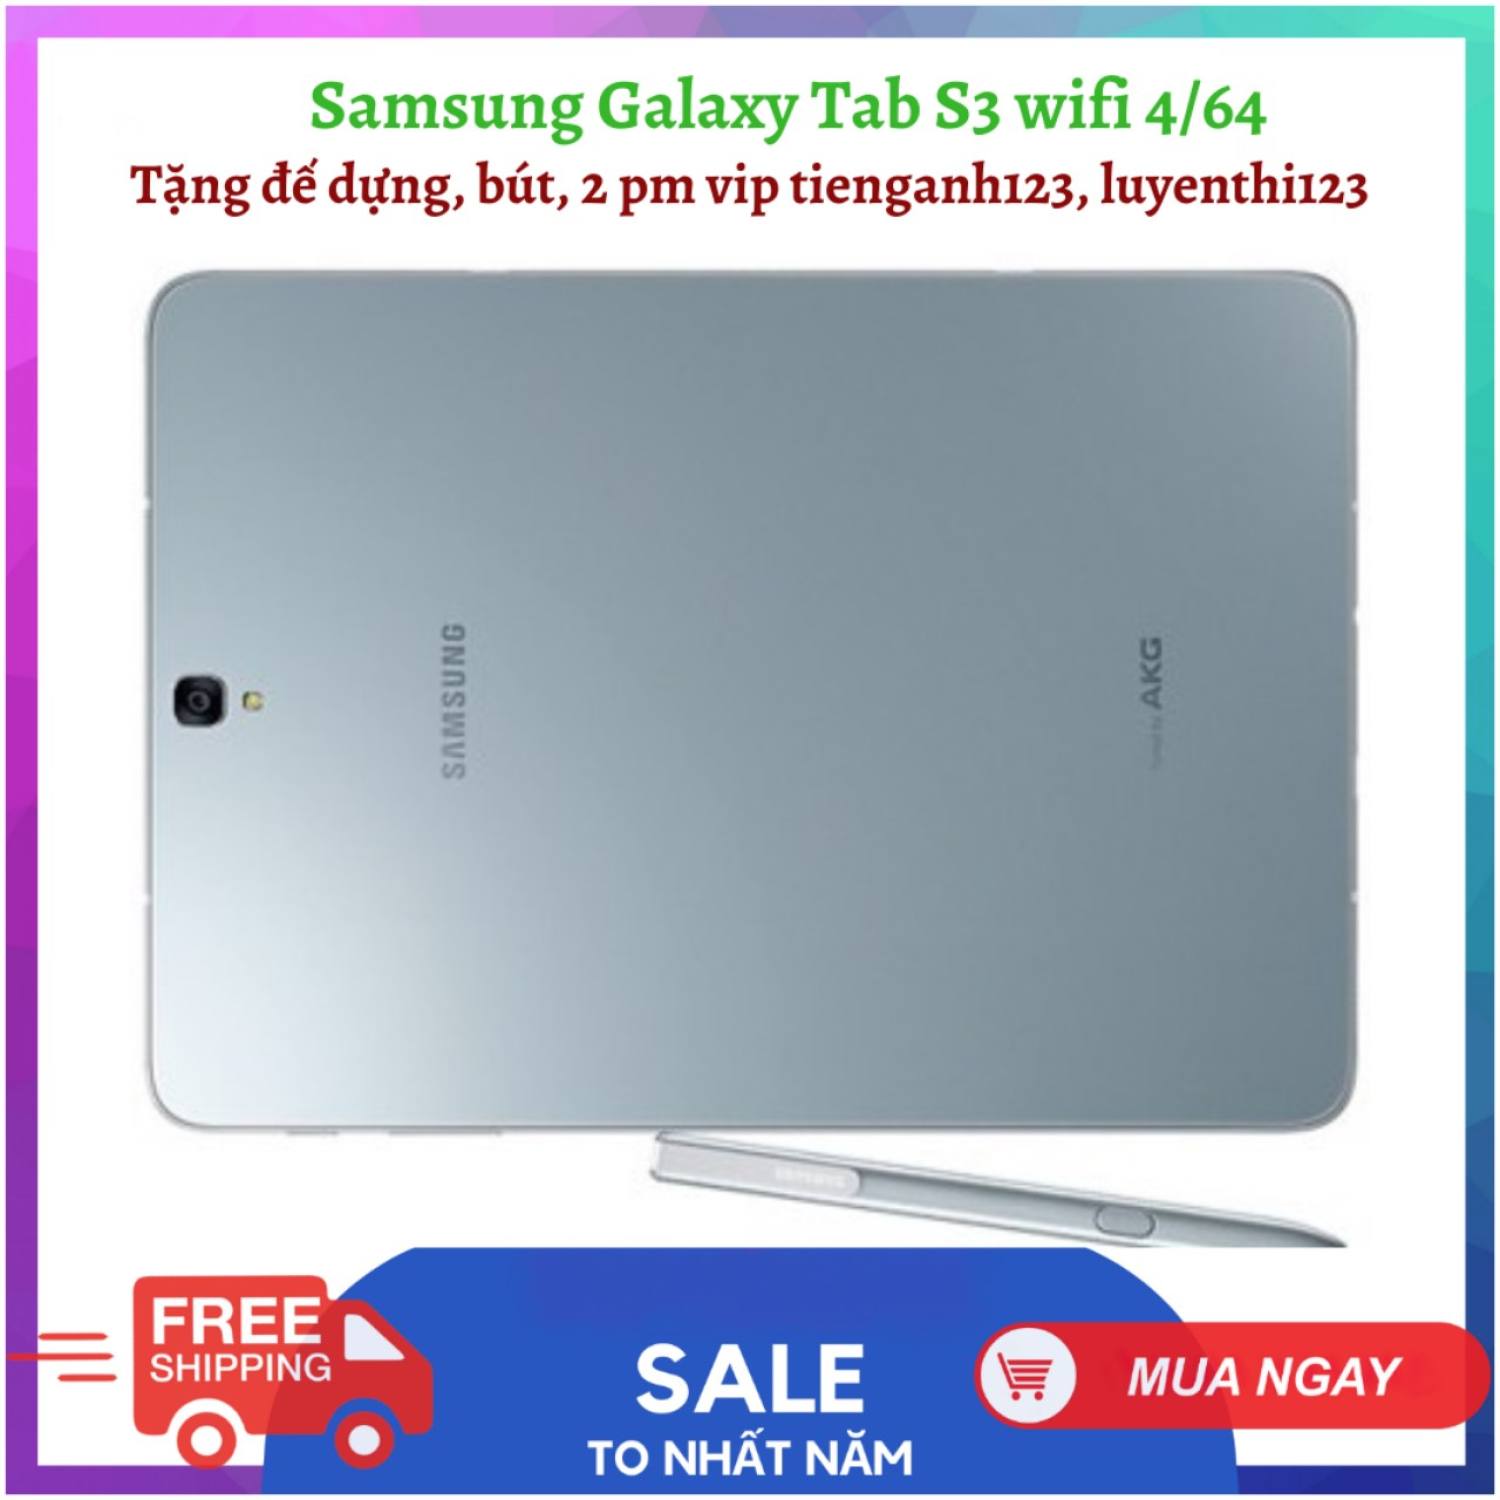 [Trả góp 0%]Máy tính bảng Samsung Galaxy Tab S3 ram 4 rom 64 tặng bút đế dựng chính hãng